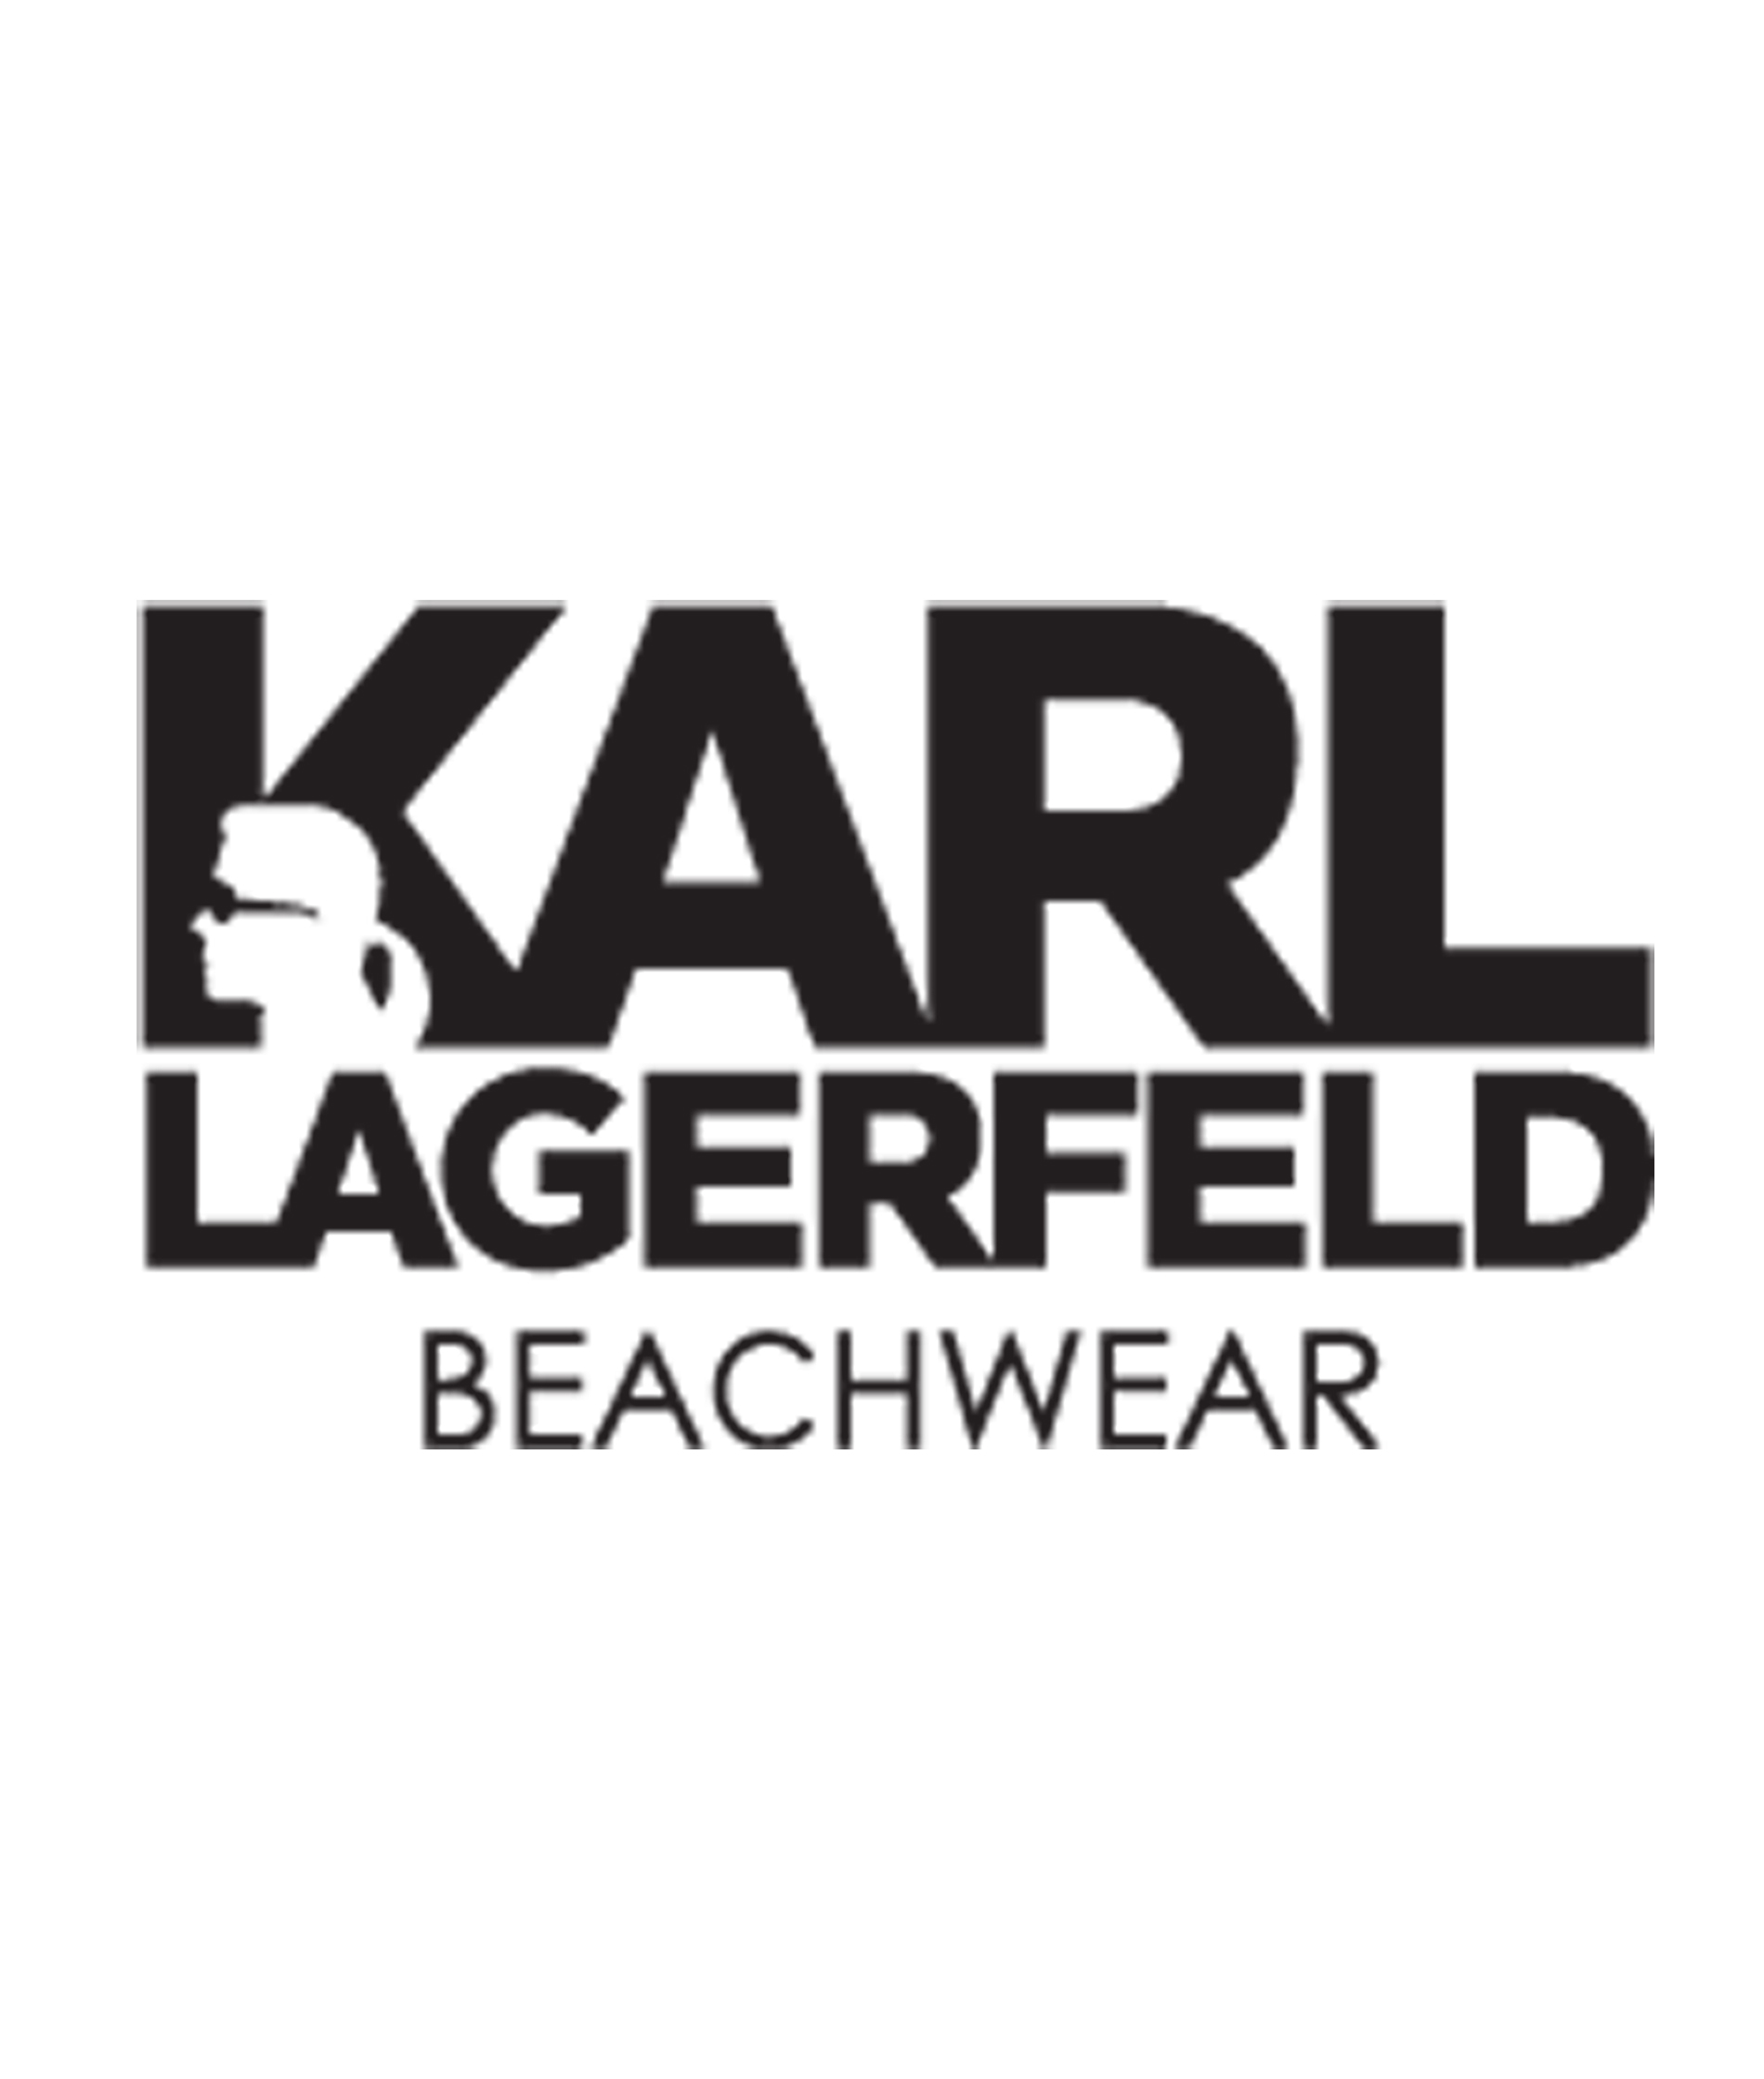 Karl Lagerfeld Beachwear